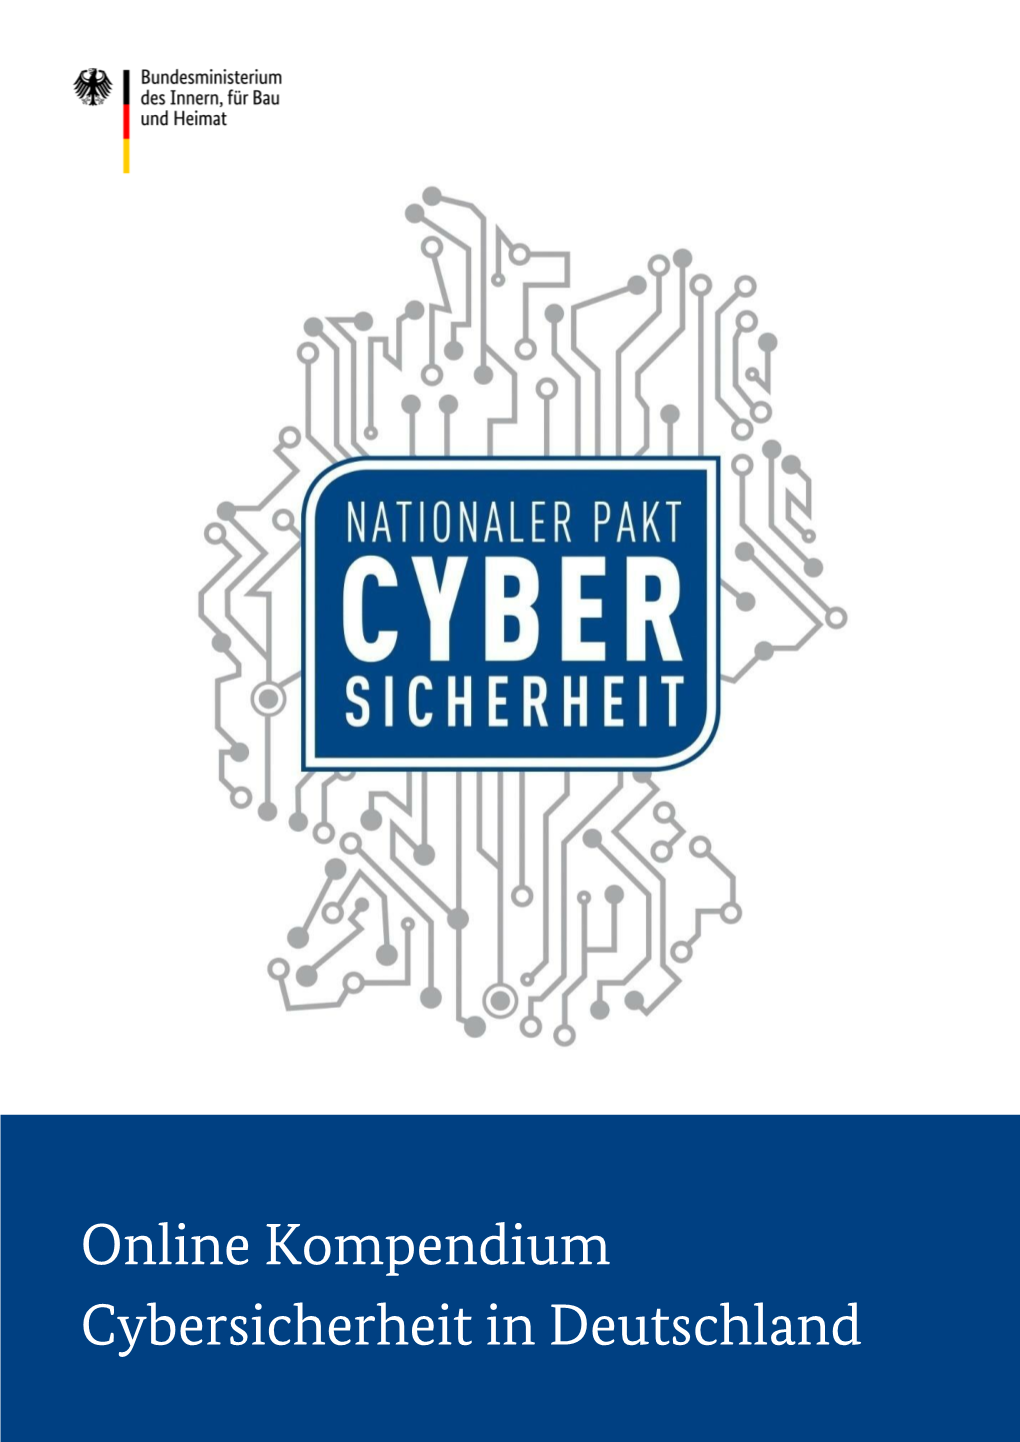 Online Kompendium Nationaler Pakt Cybersicherheit